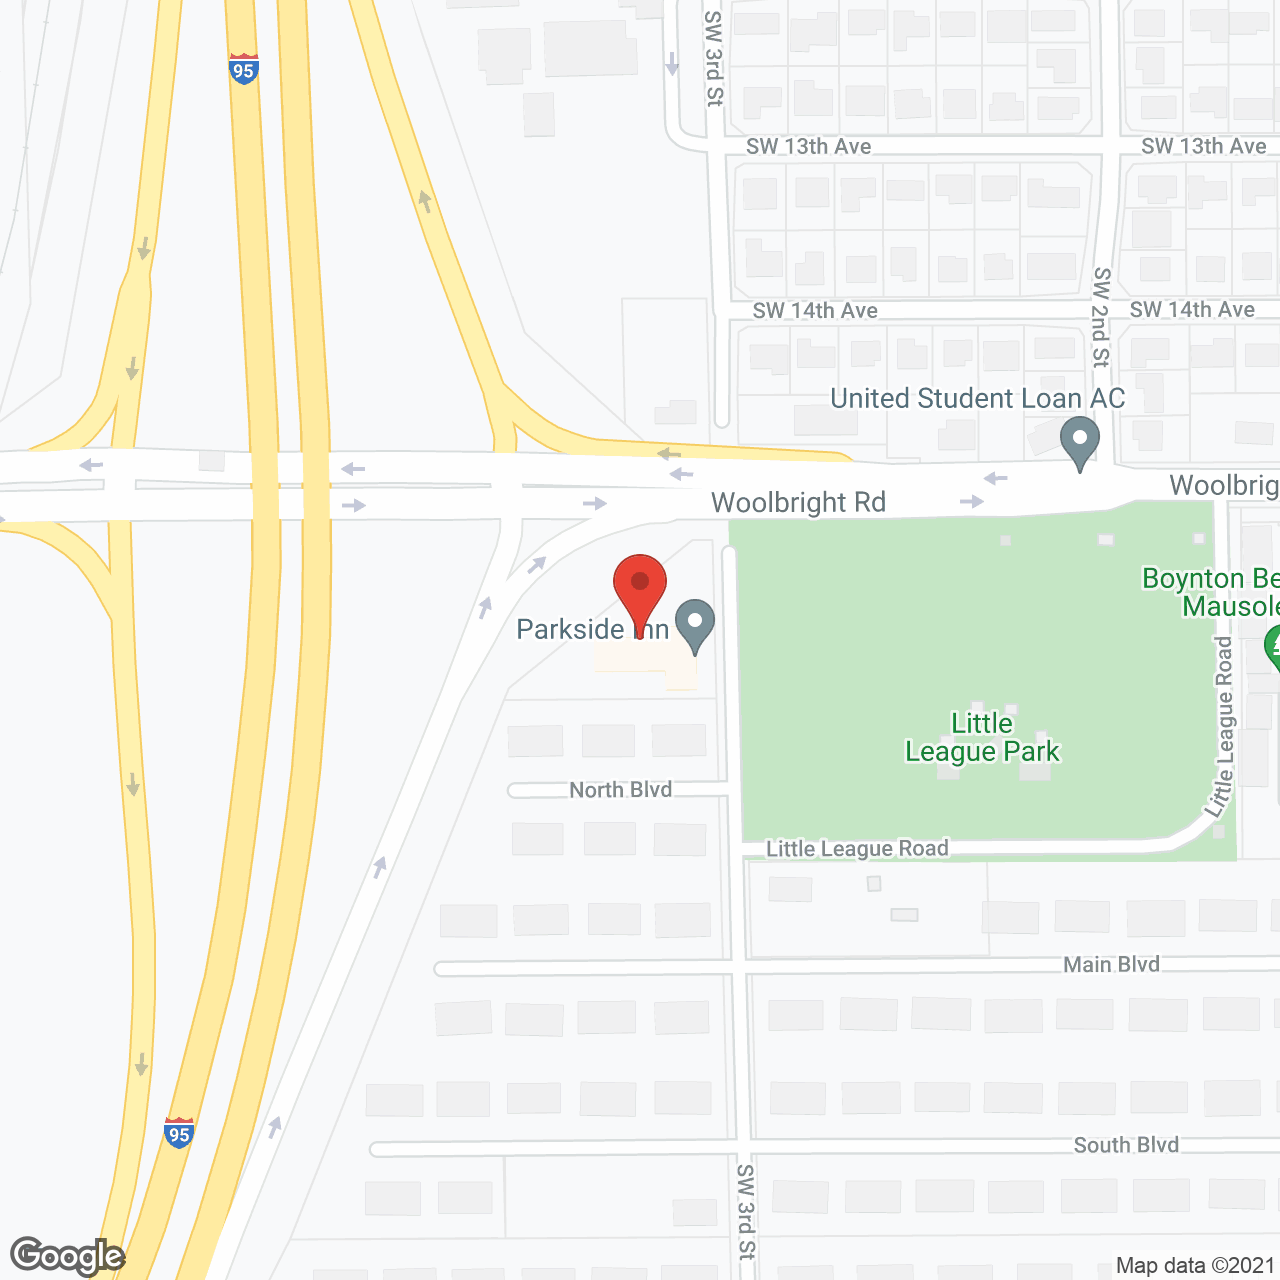 Parkside Inn in google map